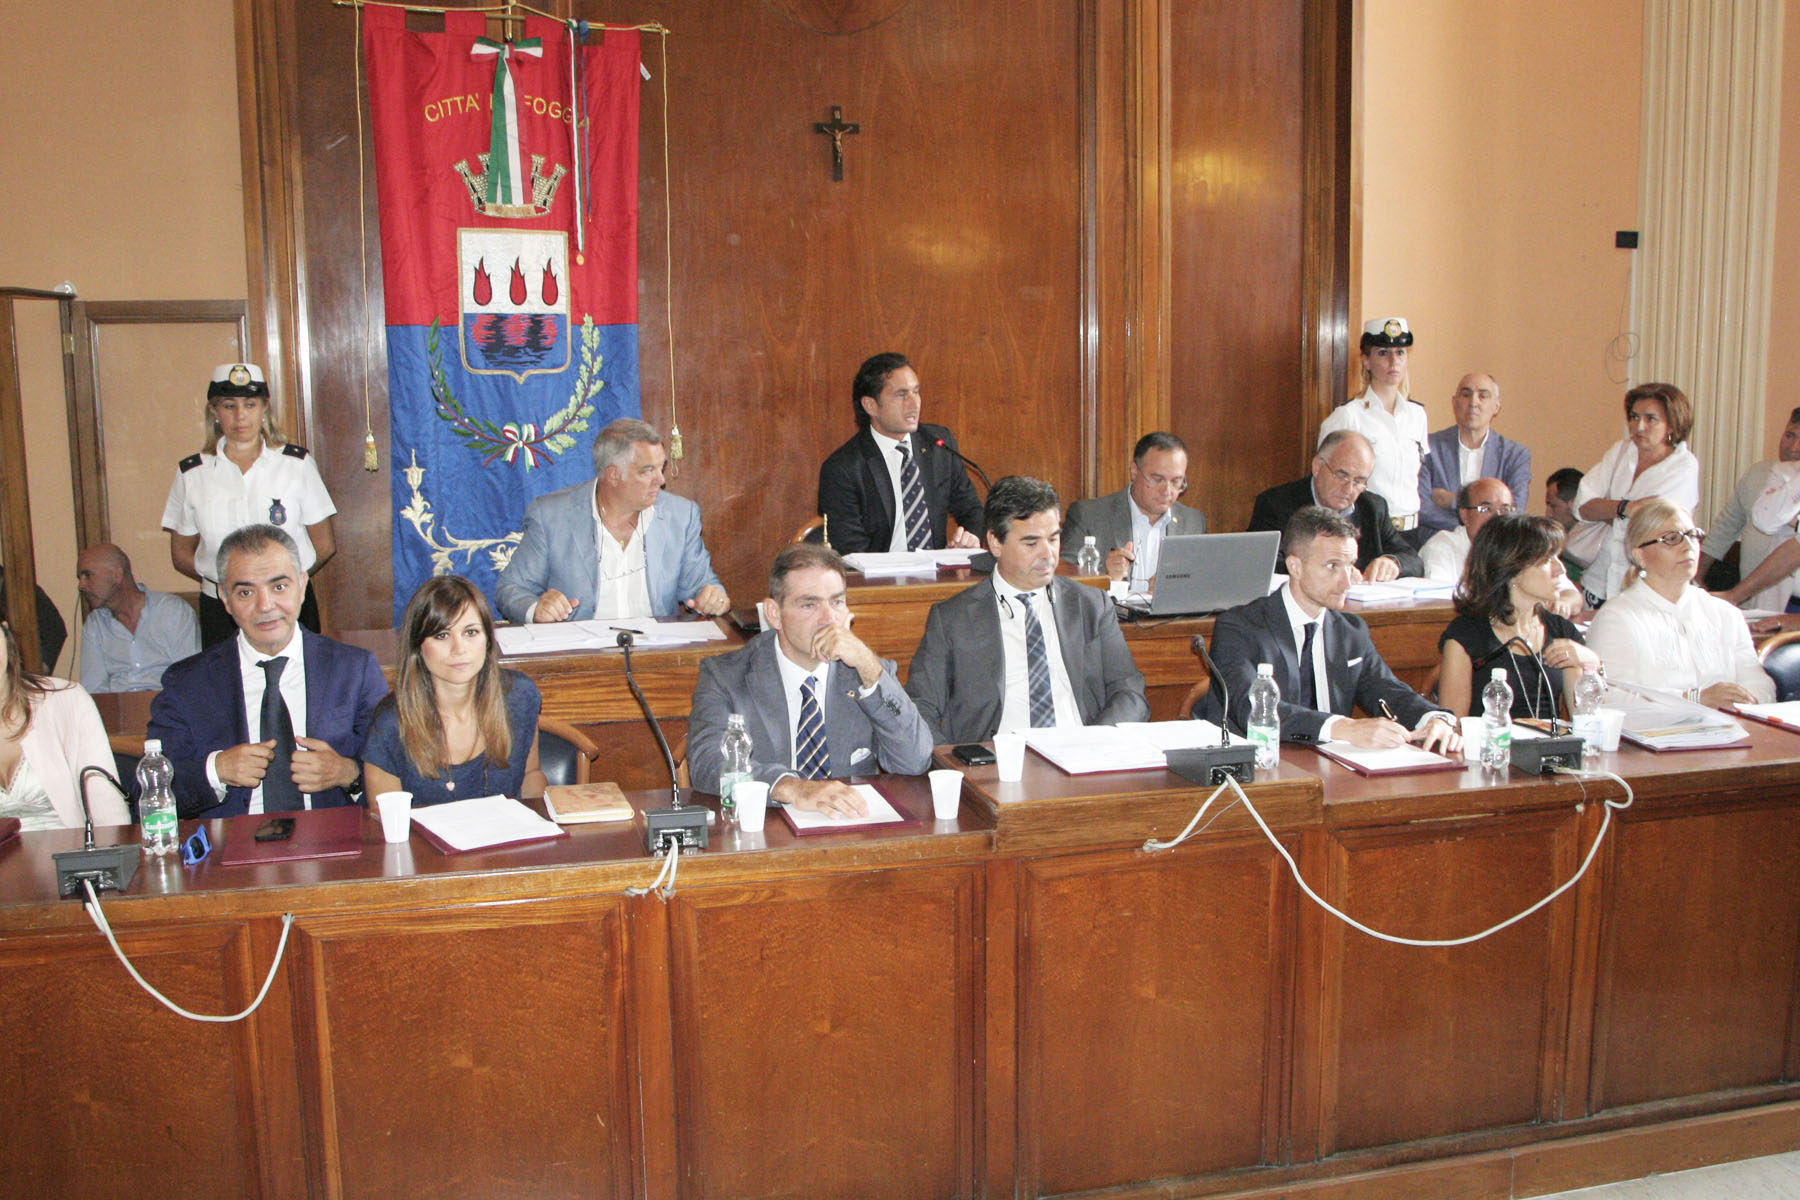 Consiglio comunale Foggia (st - MAIZZI - archivio)